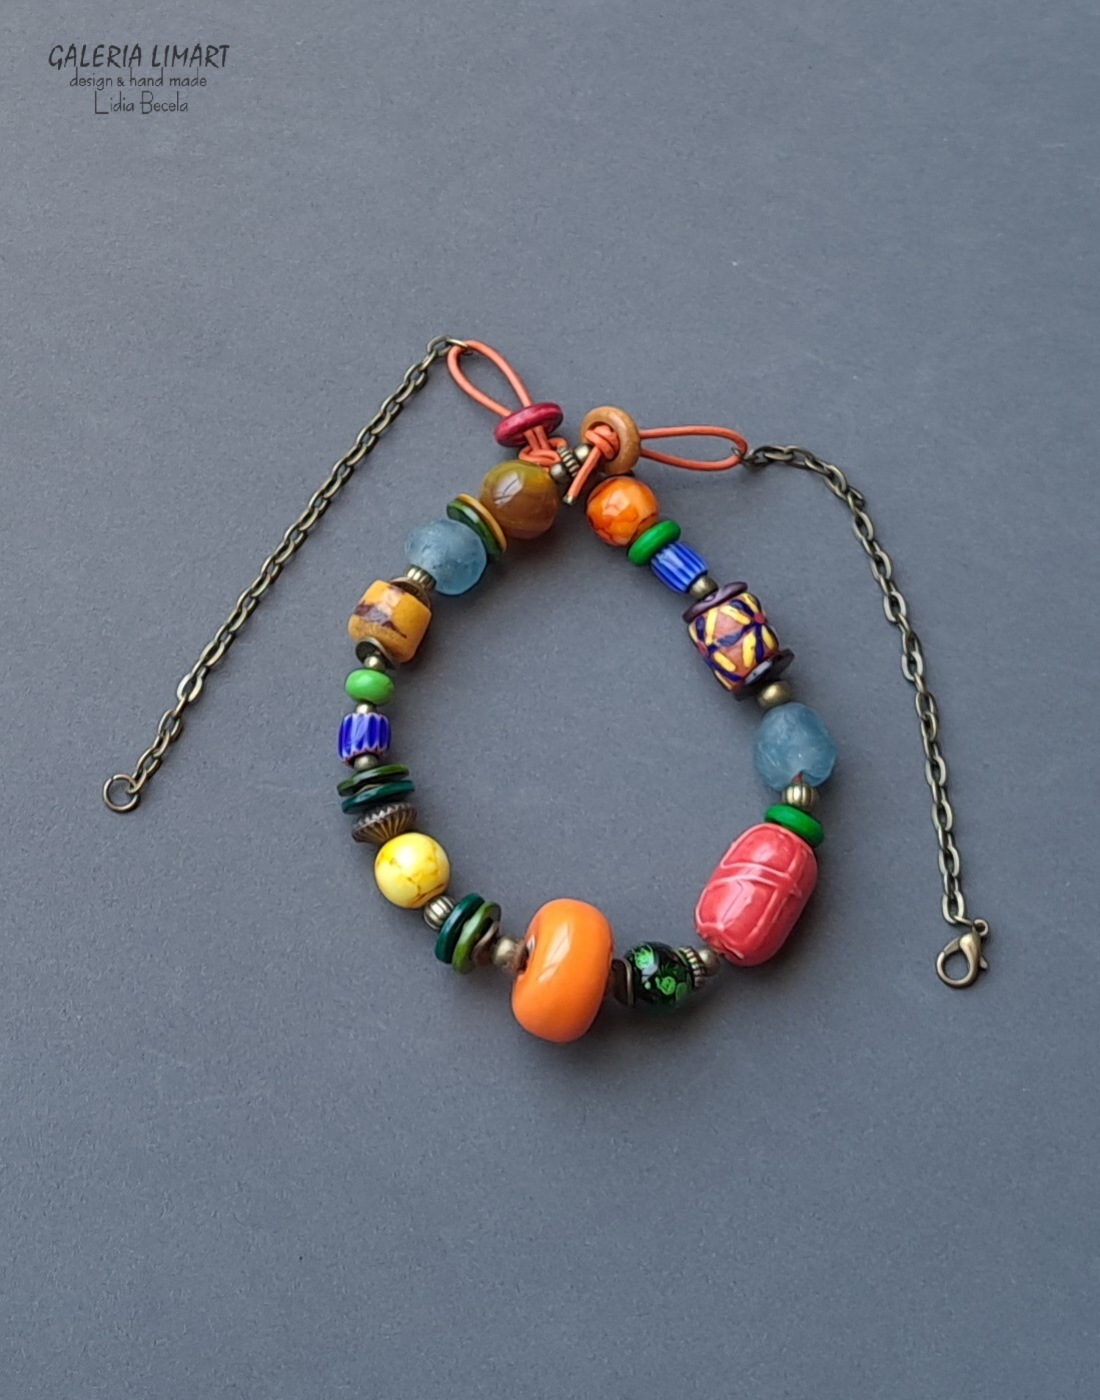 Naszyjnik optymistyczny bis dla osoby z fantazją bajecznie kolorowy unikalny prezent handmade